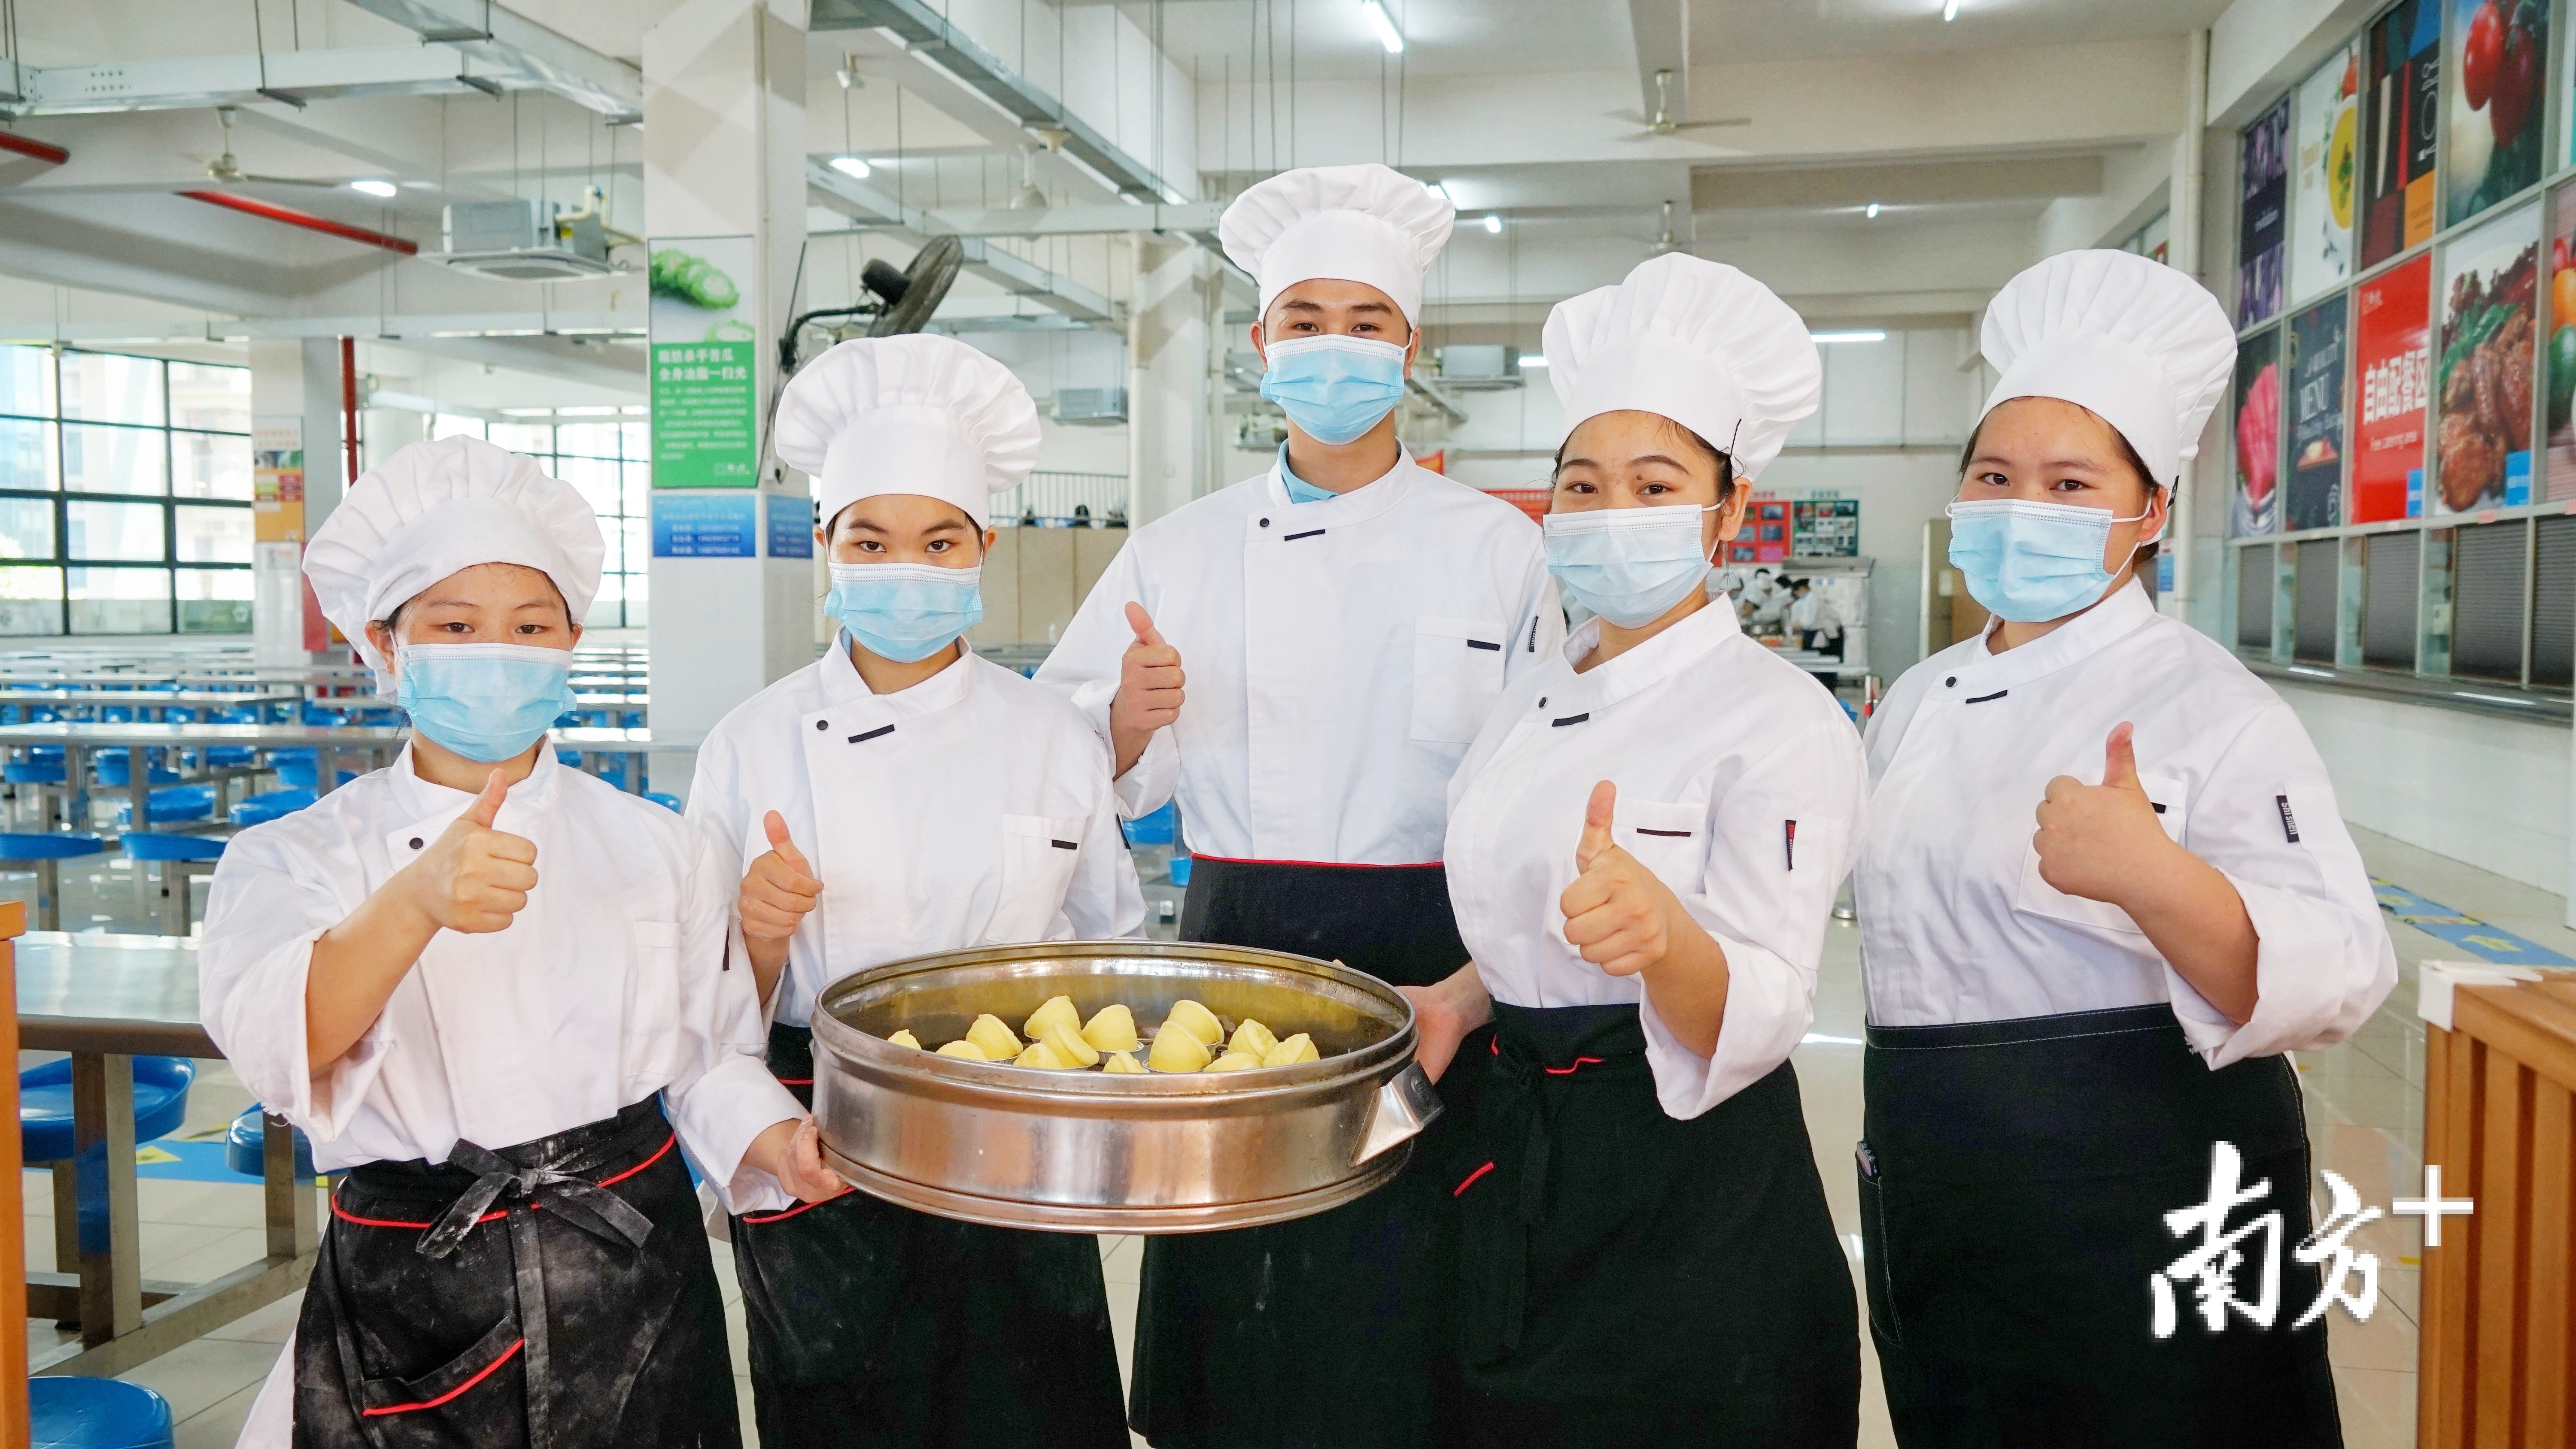 市技师学院旅游管理系烹饪专业的云南昭通籍学生在学习制作广式点心